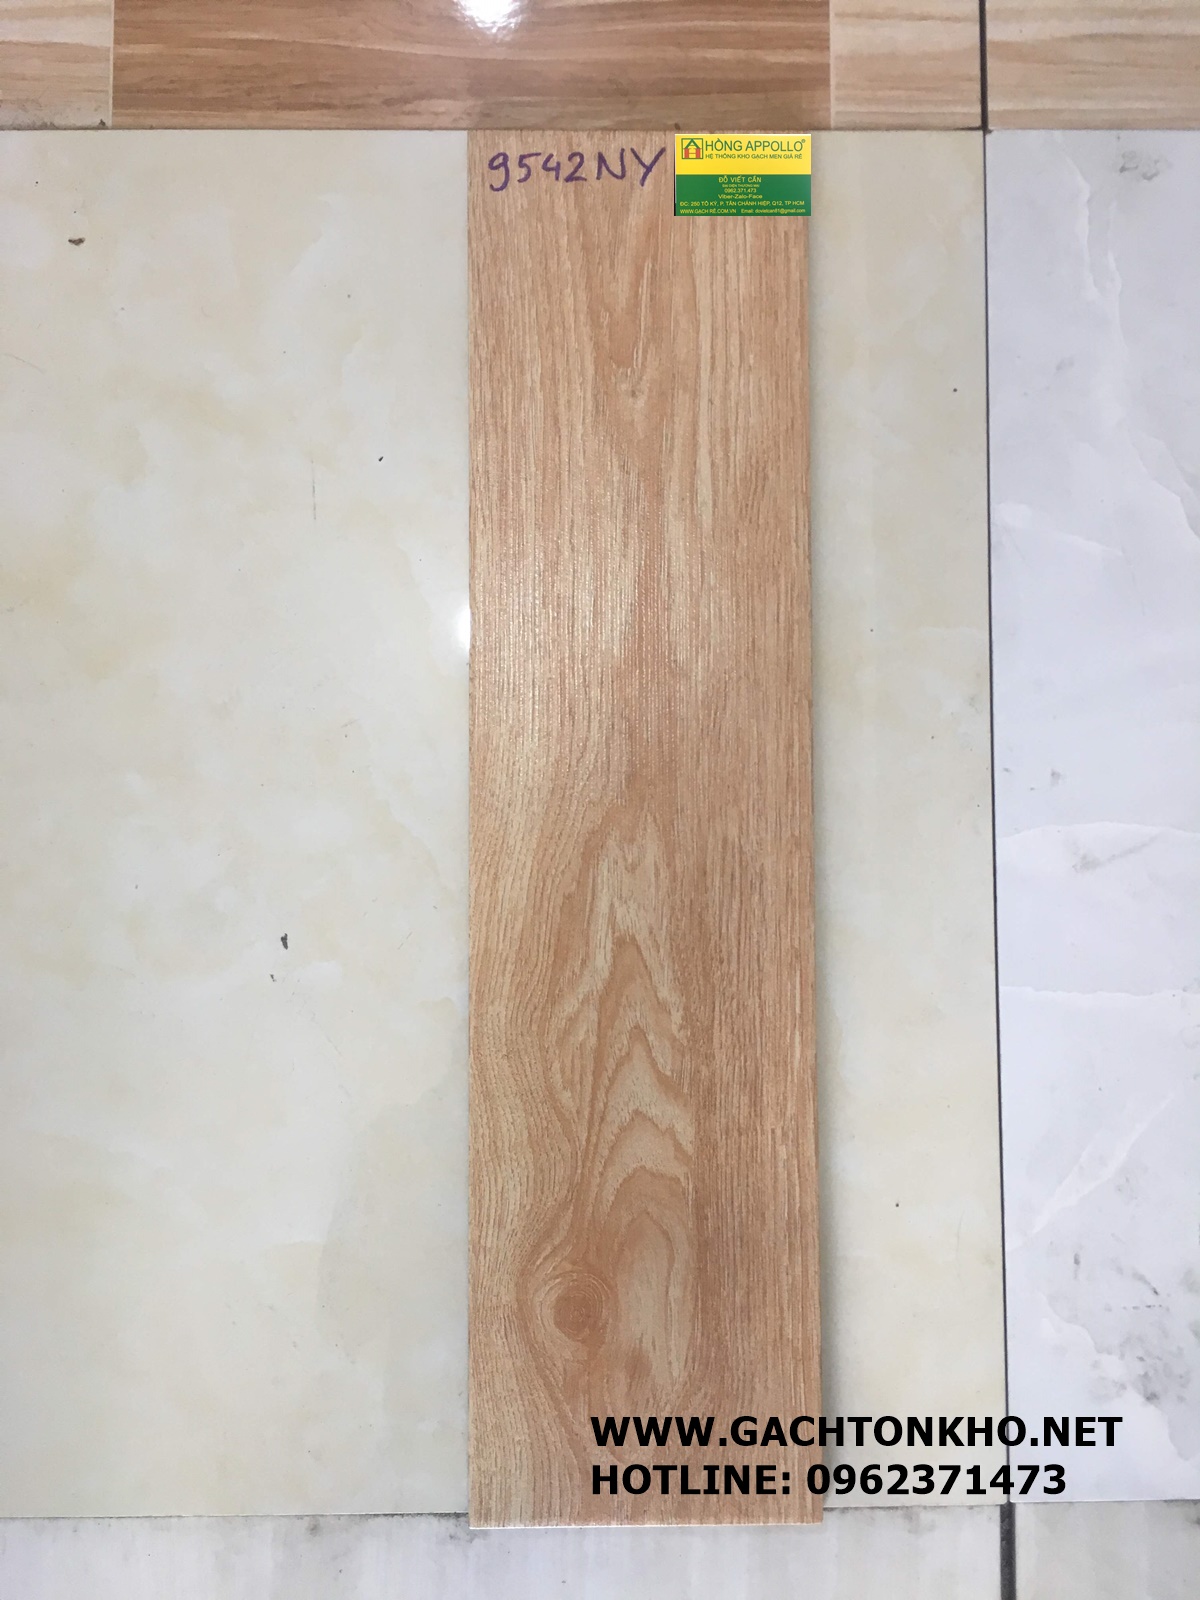 Gạch giả gỗ Prime 15x60 giá rẻ 9542NY